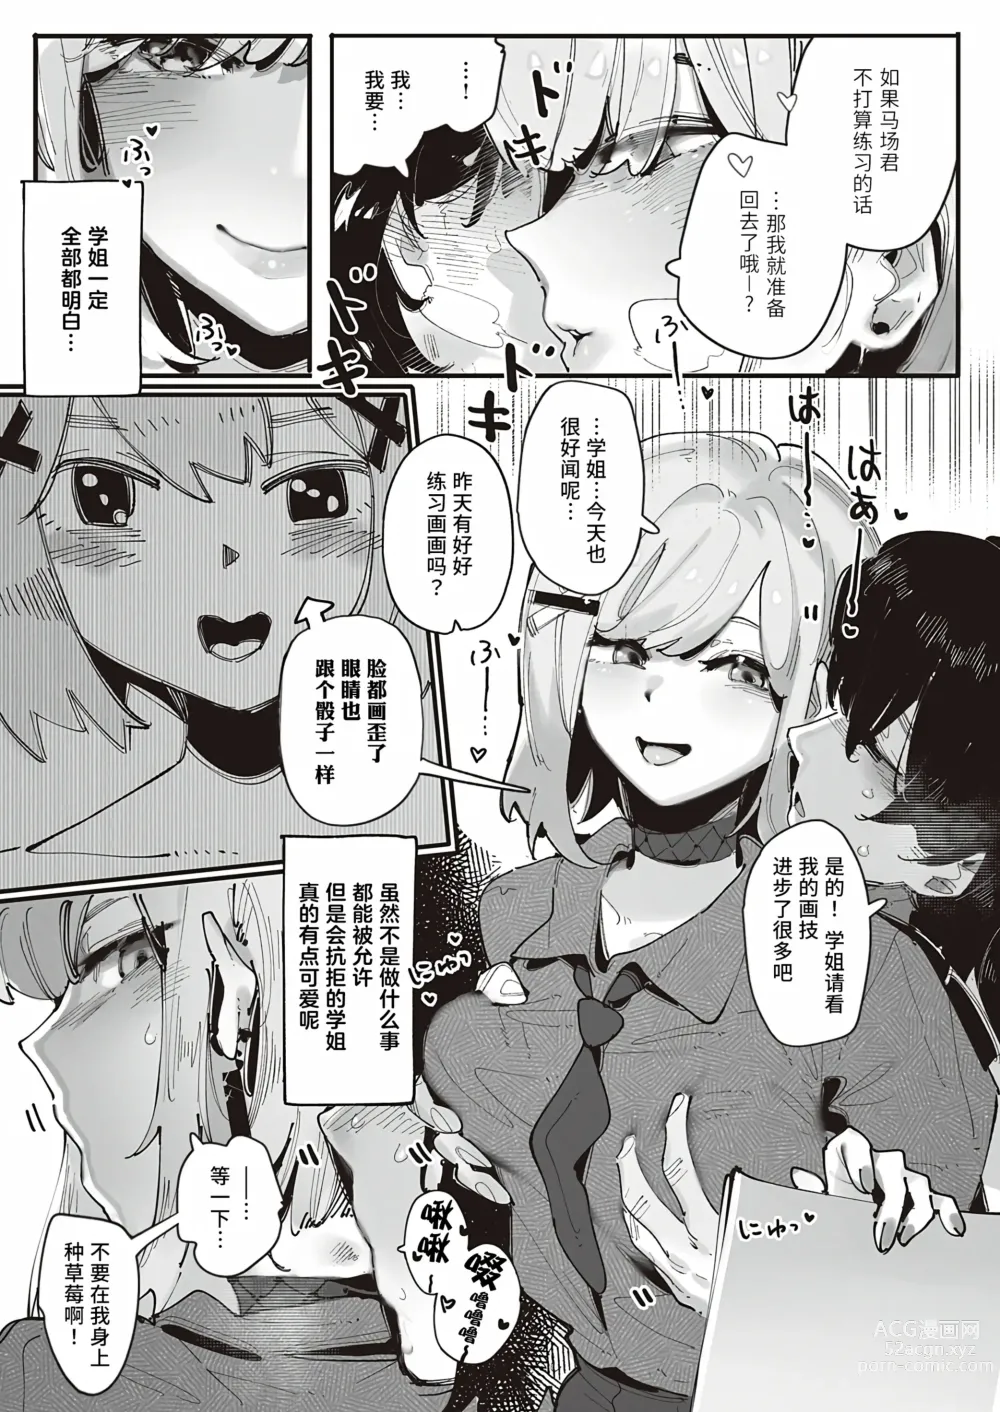 Page 3 of manga 久崎学姐的例假